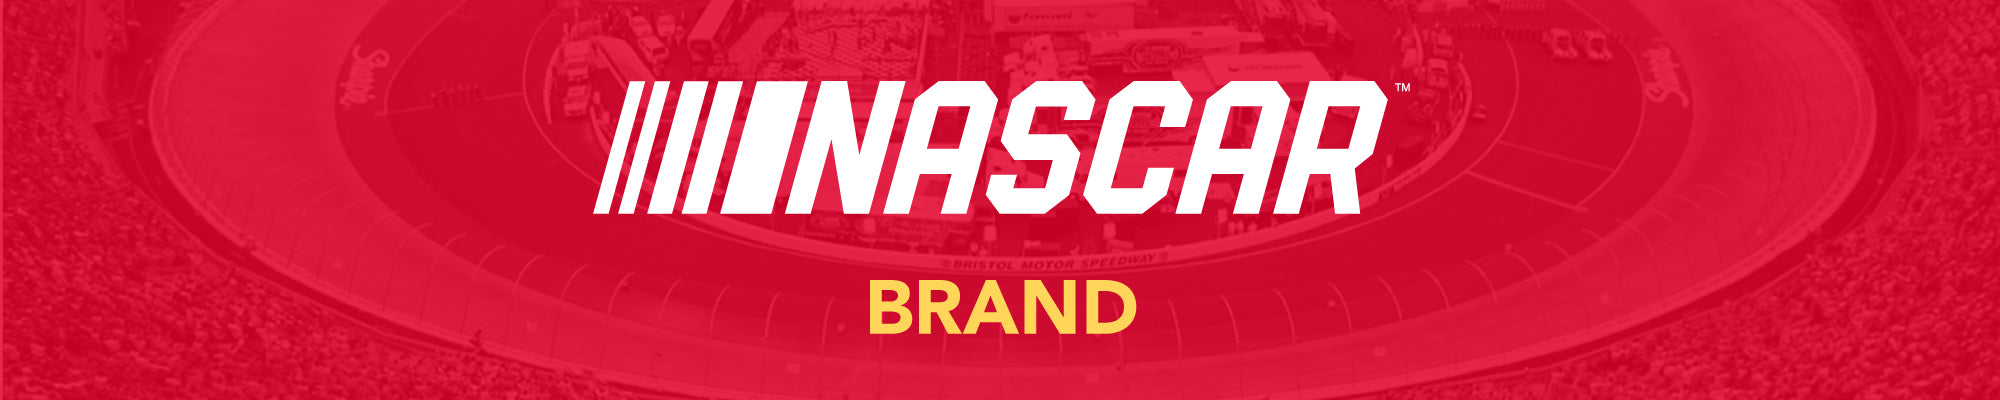 NASCAR Brand